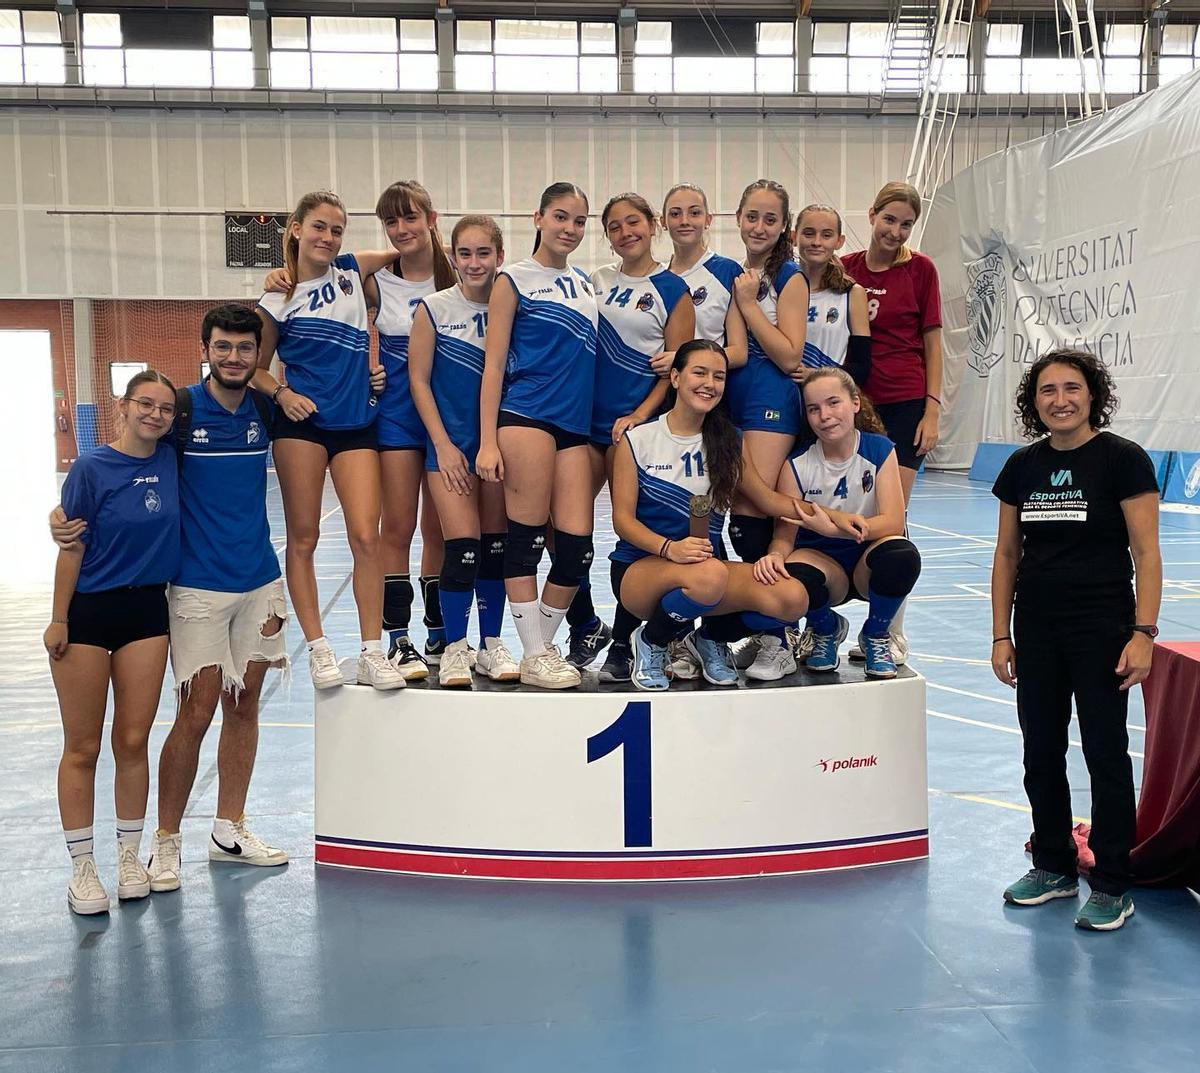 En voleibol, los dos equipos del CV Altamira de Valencia disputaron la final, resultando vencedor el Mistral.